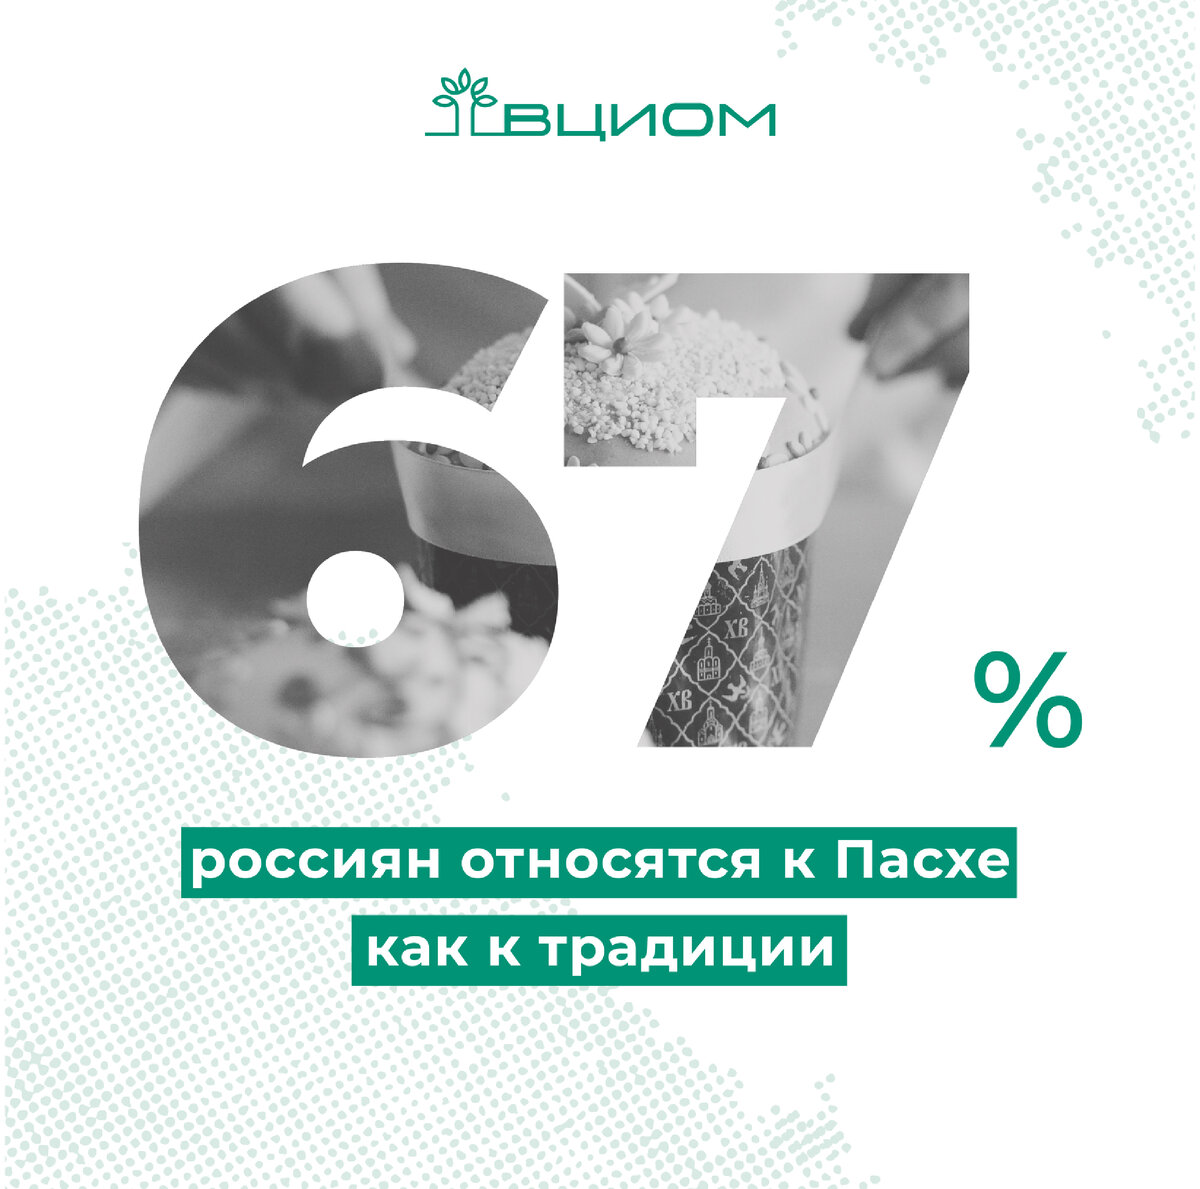 Пасха — третий по важности праздник для россиян (29%), после Дня победы (61%) и Нового года (58%).